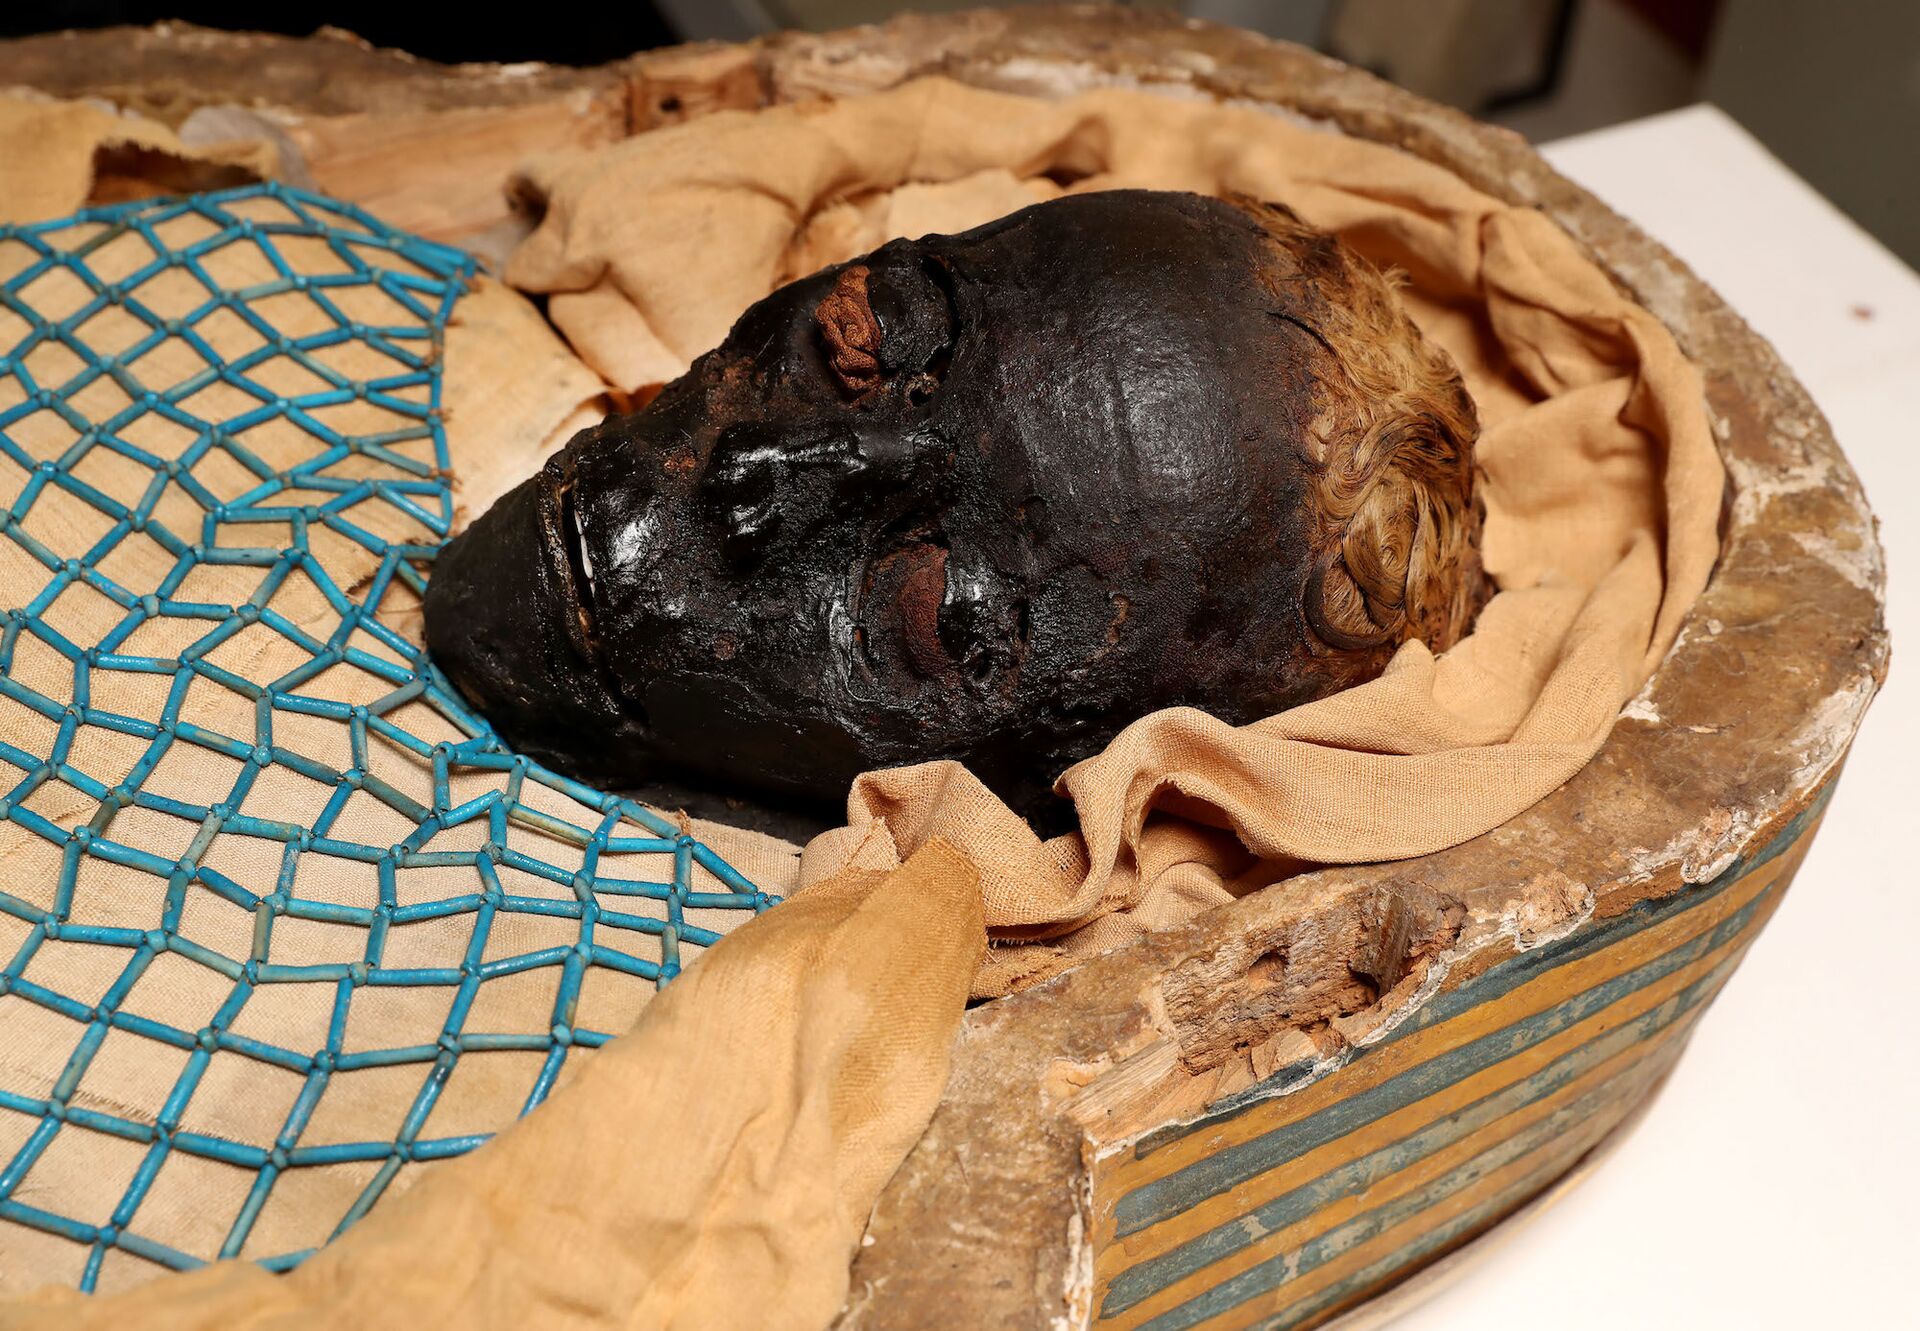 Cientistas revelam que jovem egípcia de famosa múmia Takabuti foi morta por golpe de machado - Sputnik Brasil, 1920, 02.04.2021